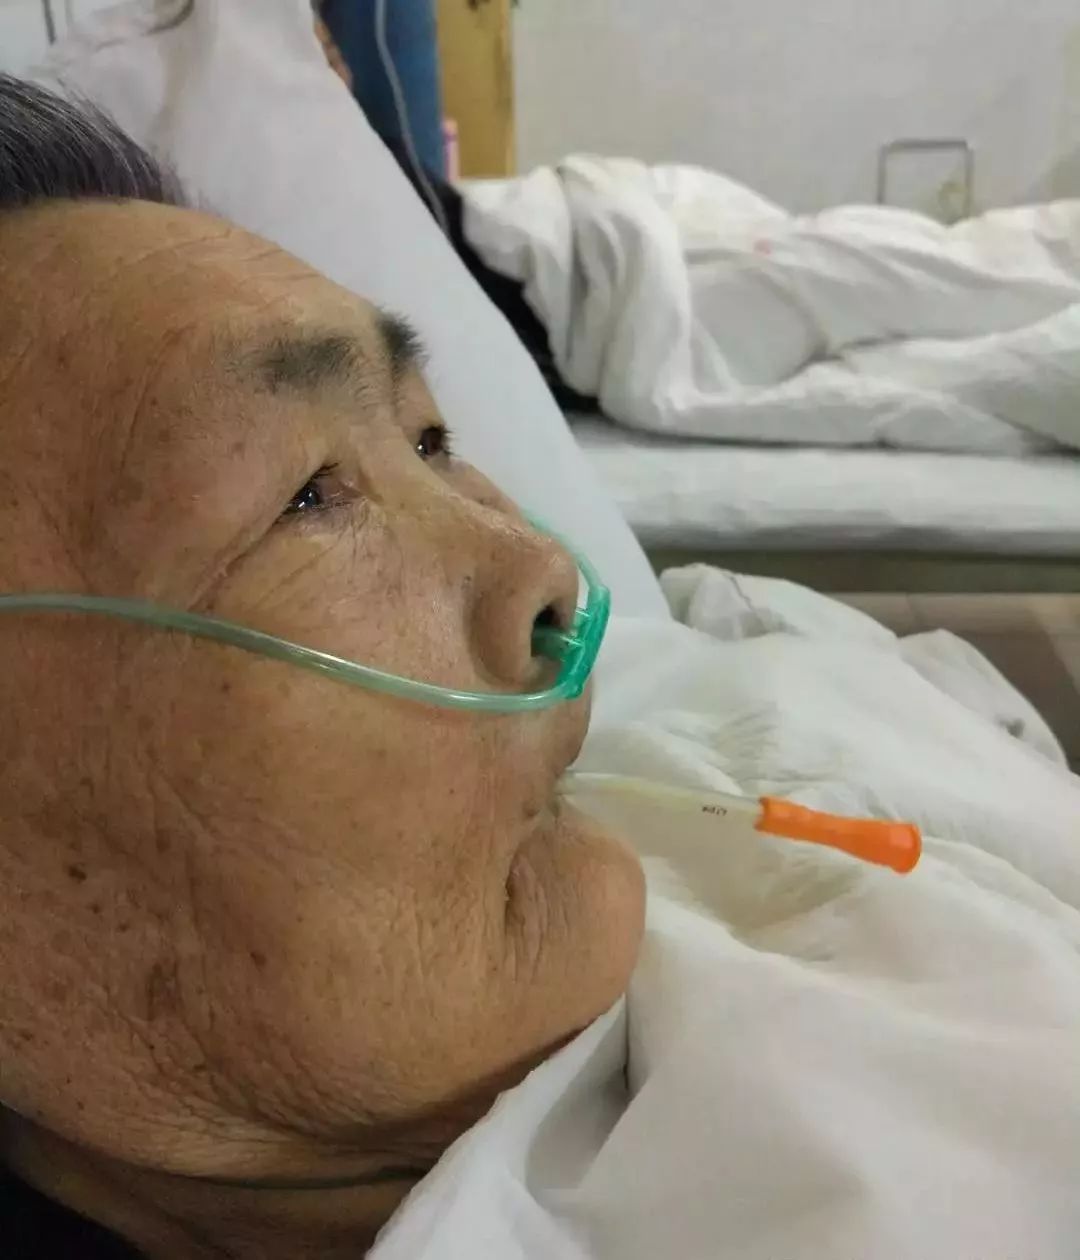 博罗县人民医院首例床旁徒手盲插鼻空肠置管术成功开展